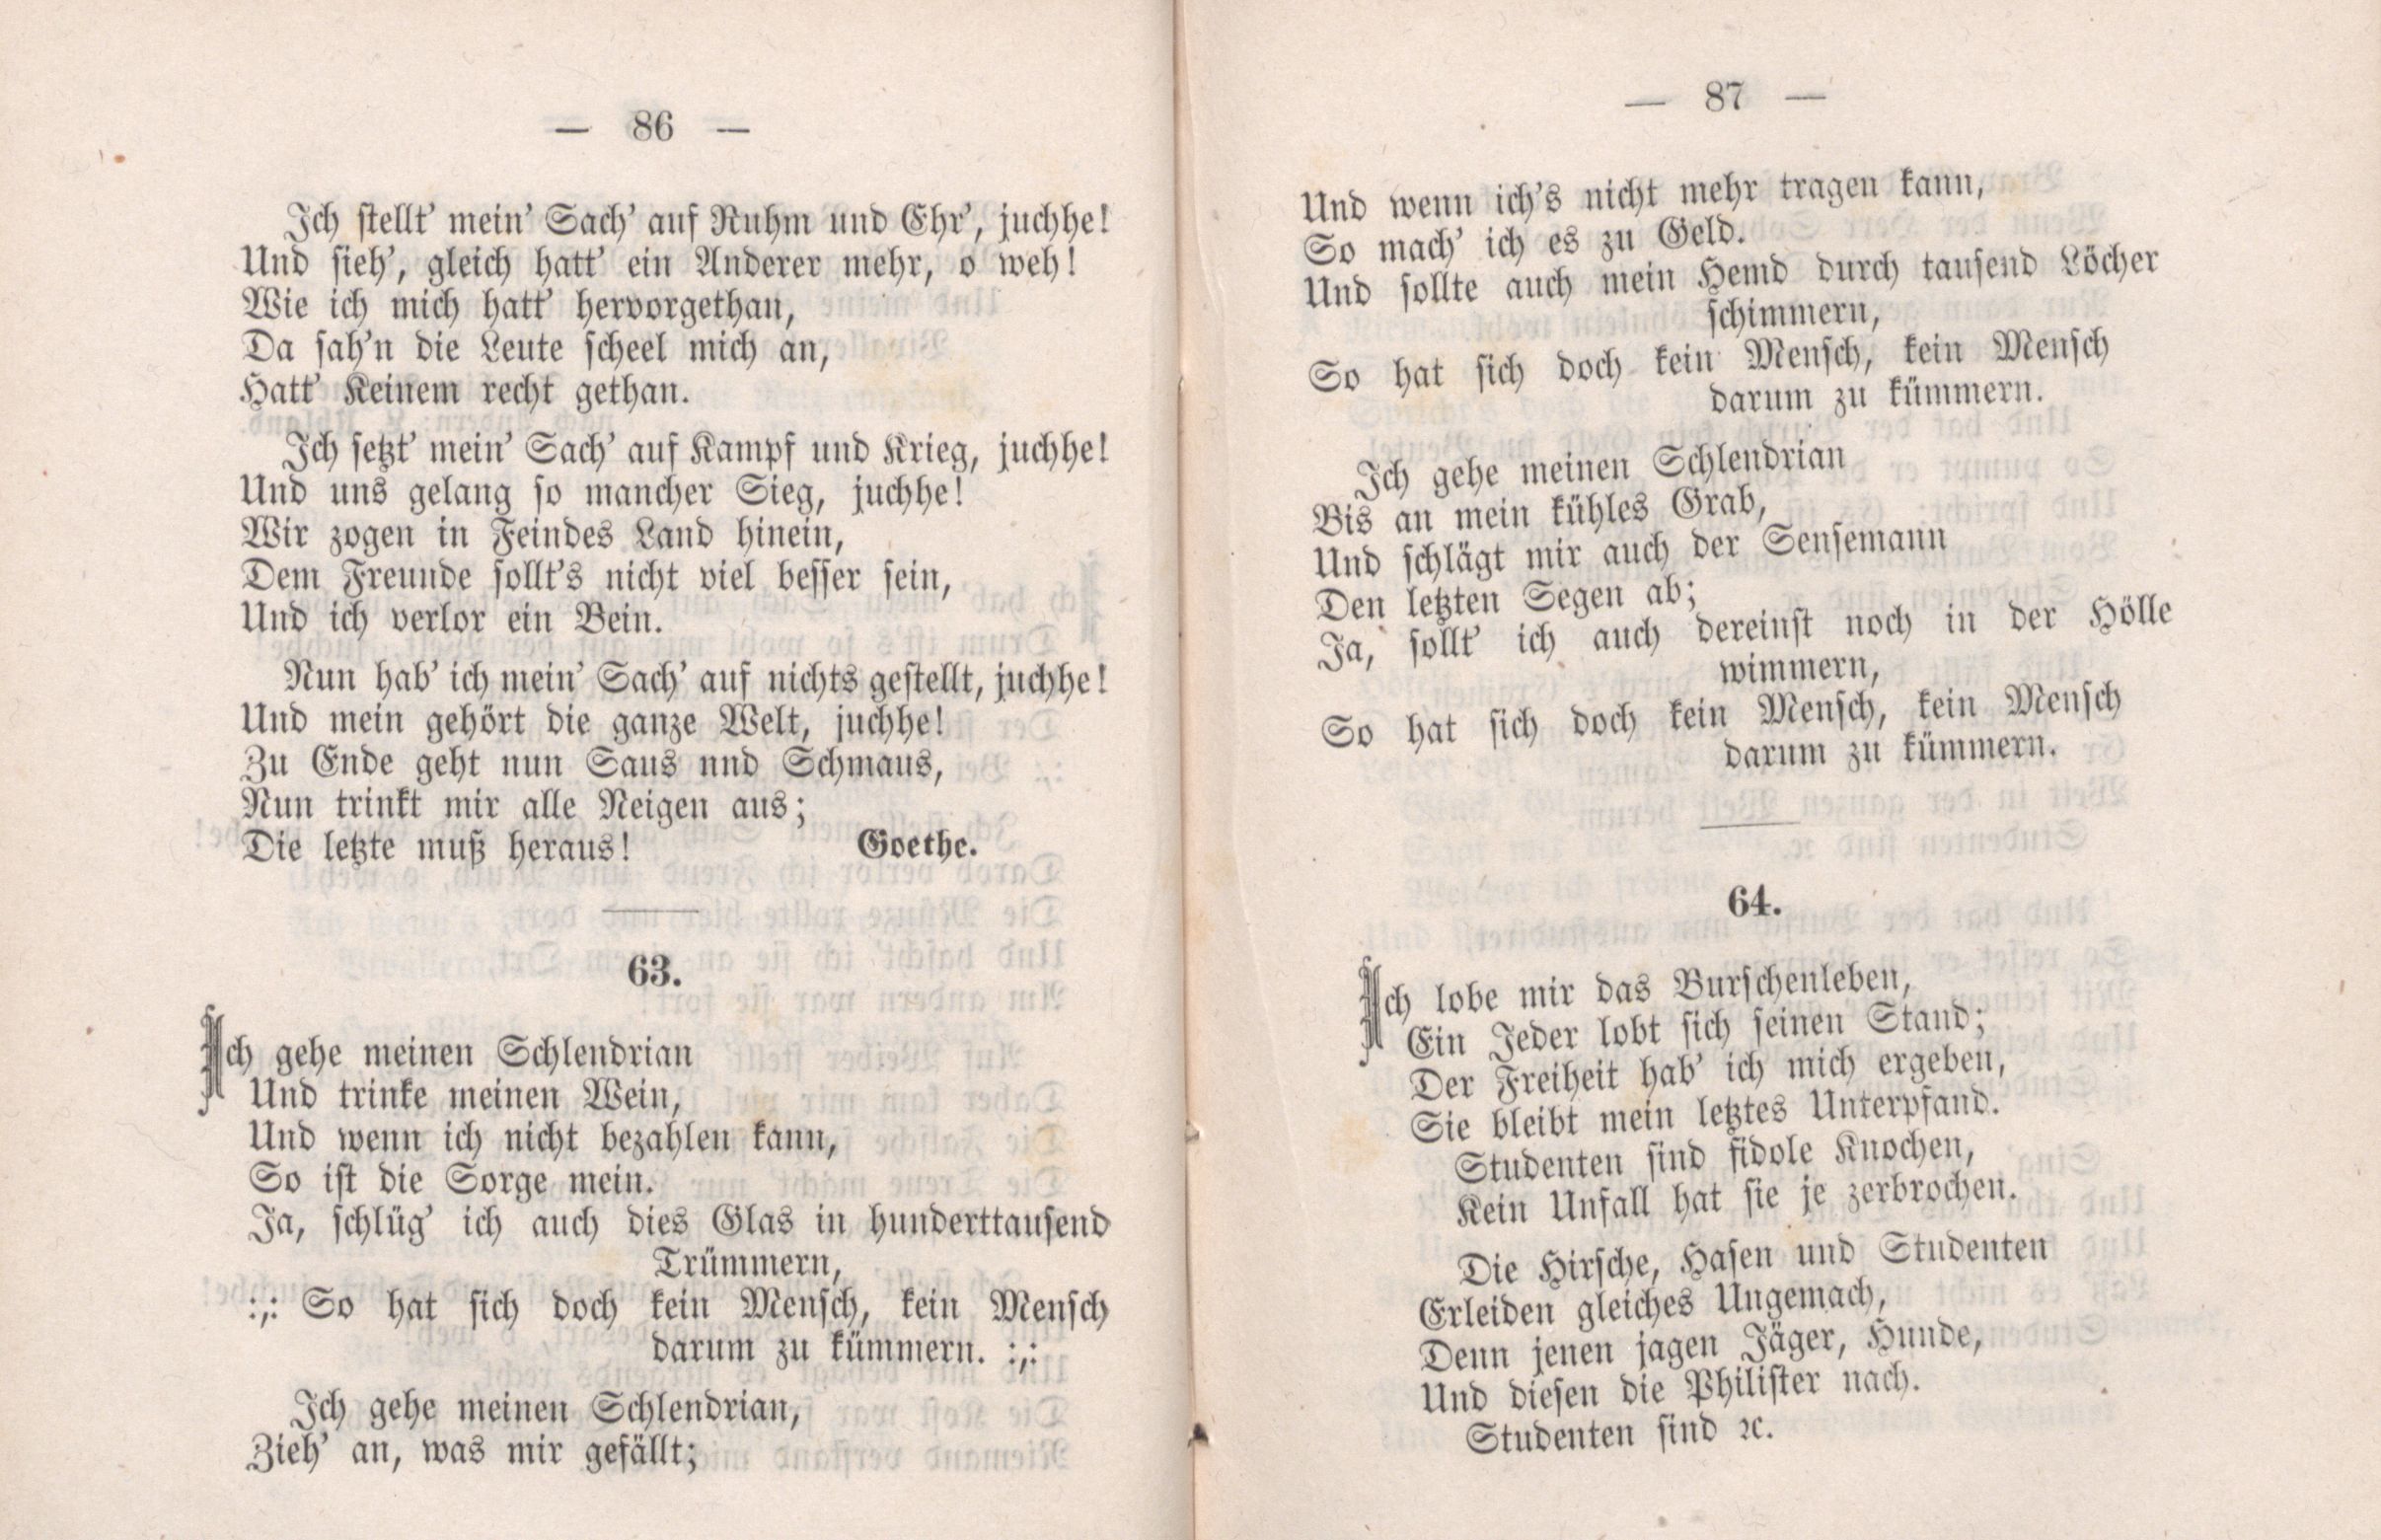 Dorpater Burschenliederbuch (1882) | 49. (86-87) Main body of text